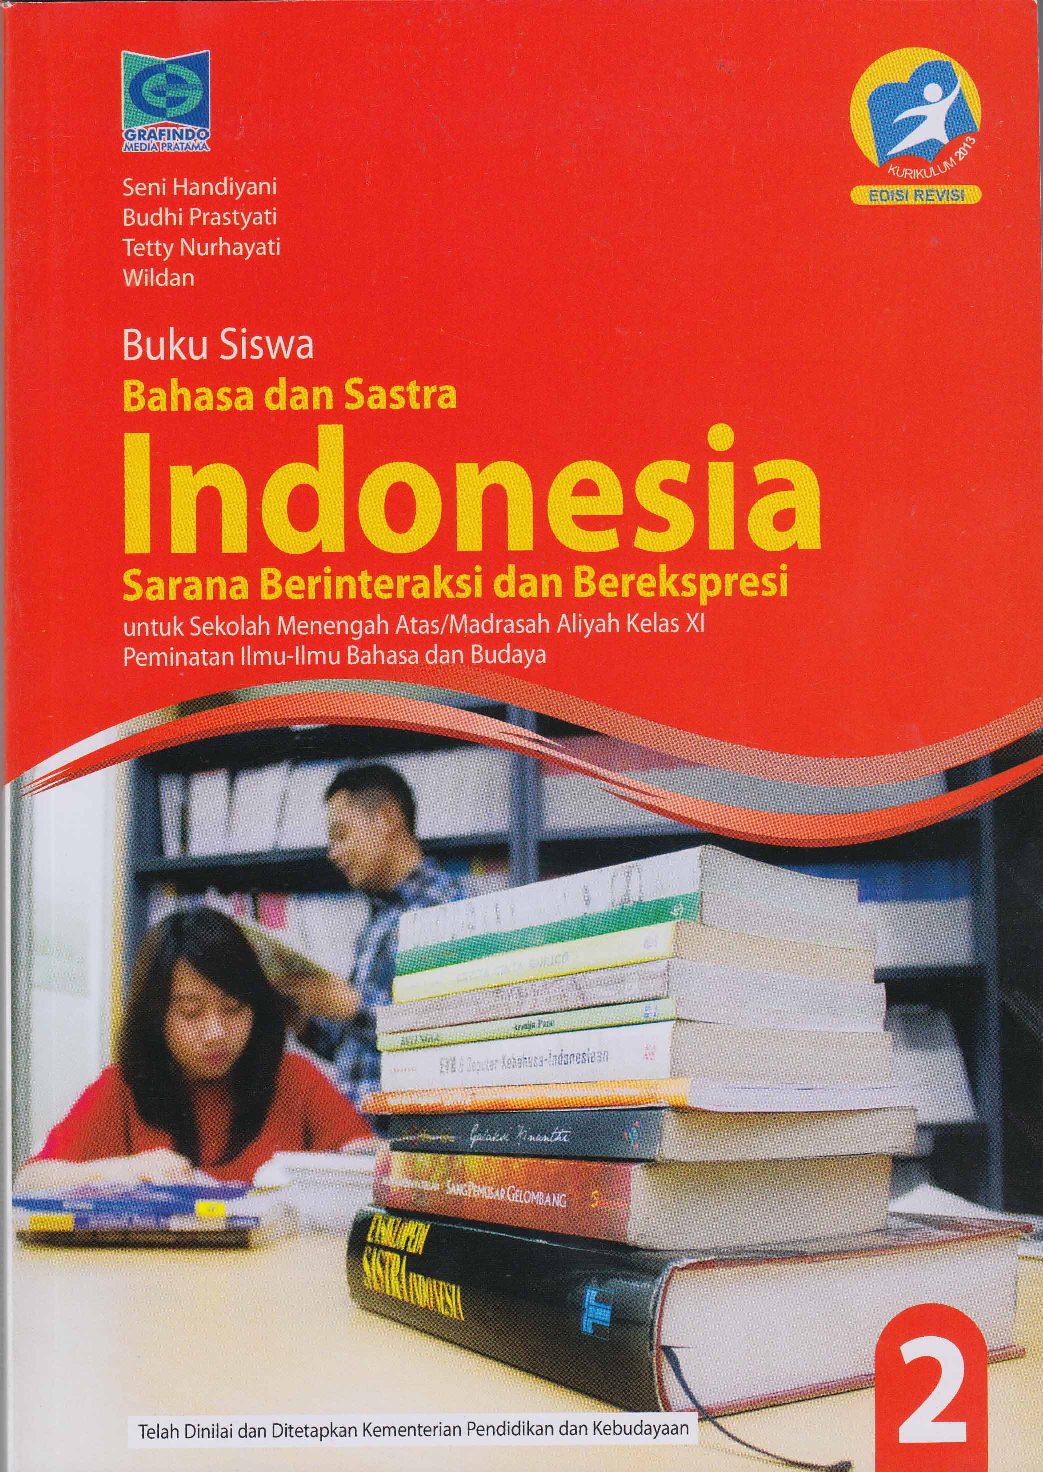 Buku Paket Bahasa Jawa Kelas 11 Kurikulum 2013 Pdf